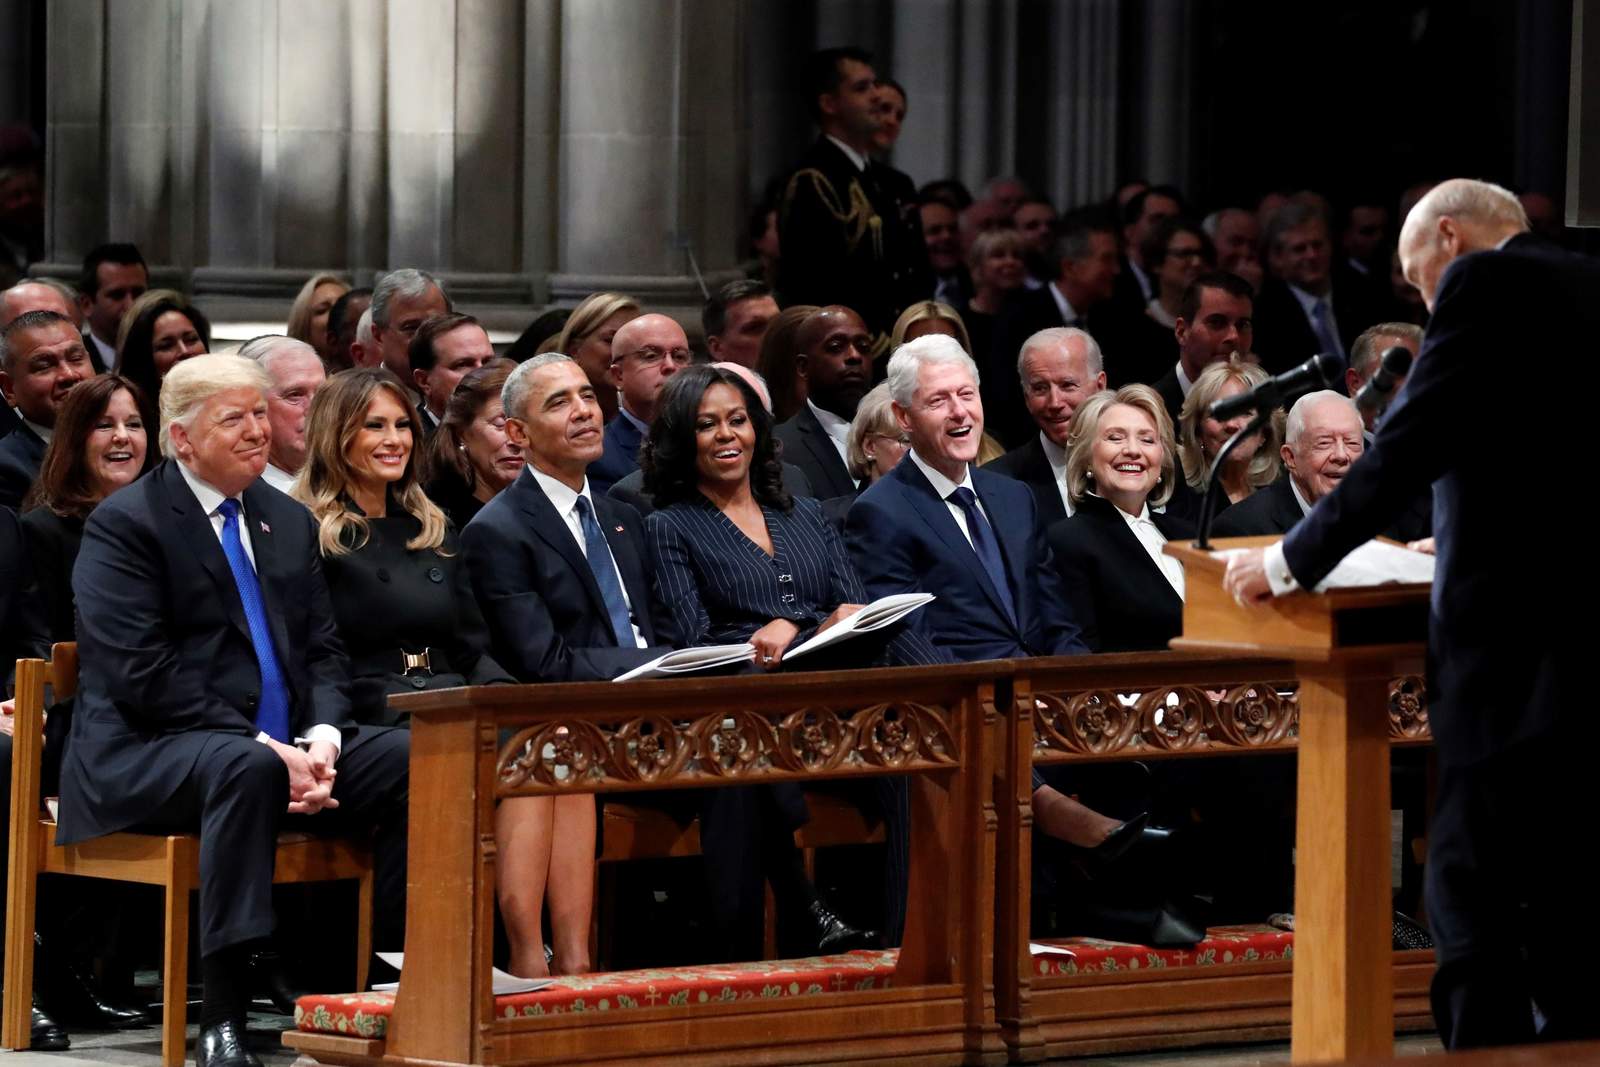 Antes del funeral de estado del viernes del fallecido expresidente, los exmandatarios Barack Obama, Bill Clinton y Jimmy Carter, y sus esposas conversaron tranquilamente desde sus lugares en la fila principal en la Catedral Nacional de Washington. (EFE)